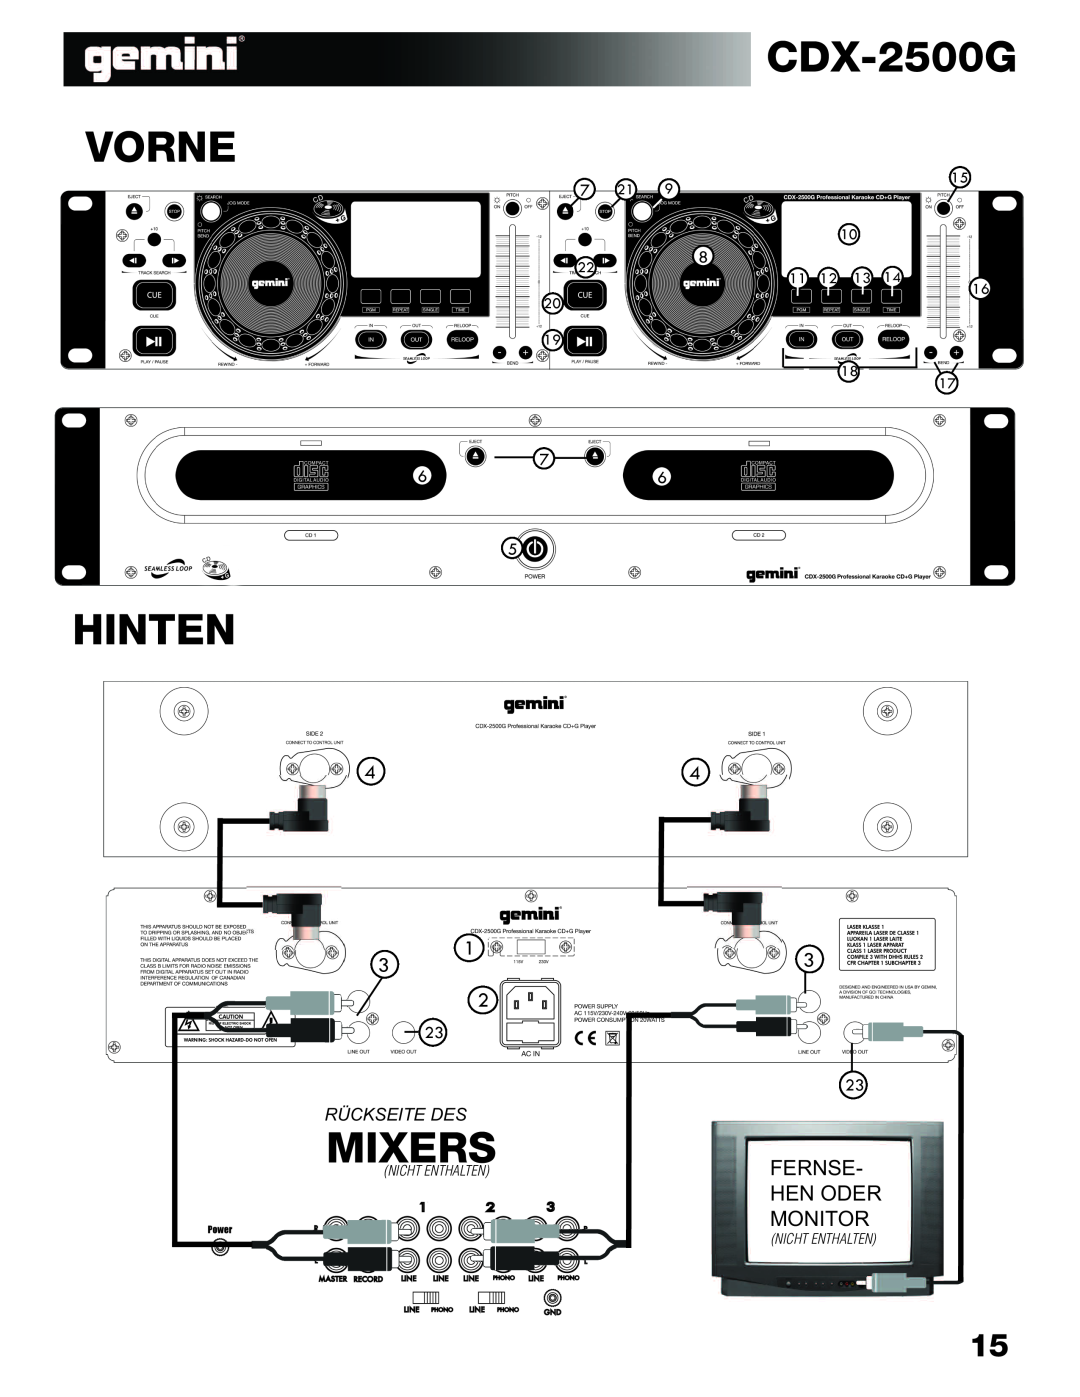 Gemini CDX-2500G manual Vorne, Hinten, Mixers, Hen Oder, Fernse, Monitor, Rückseite Des 